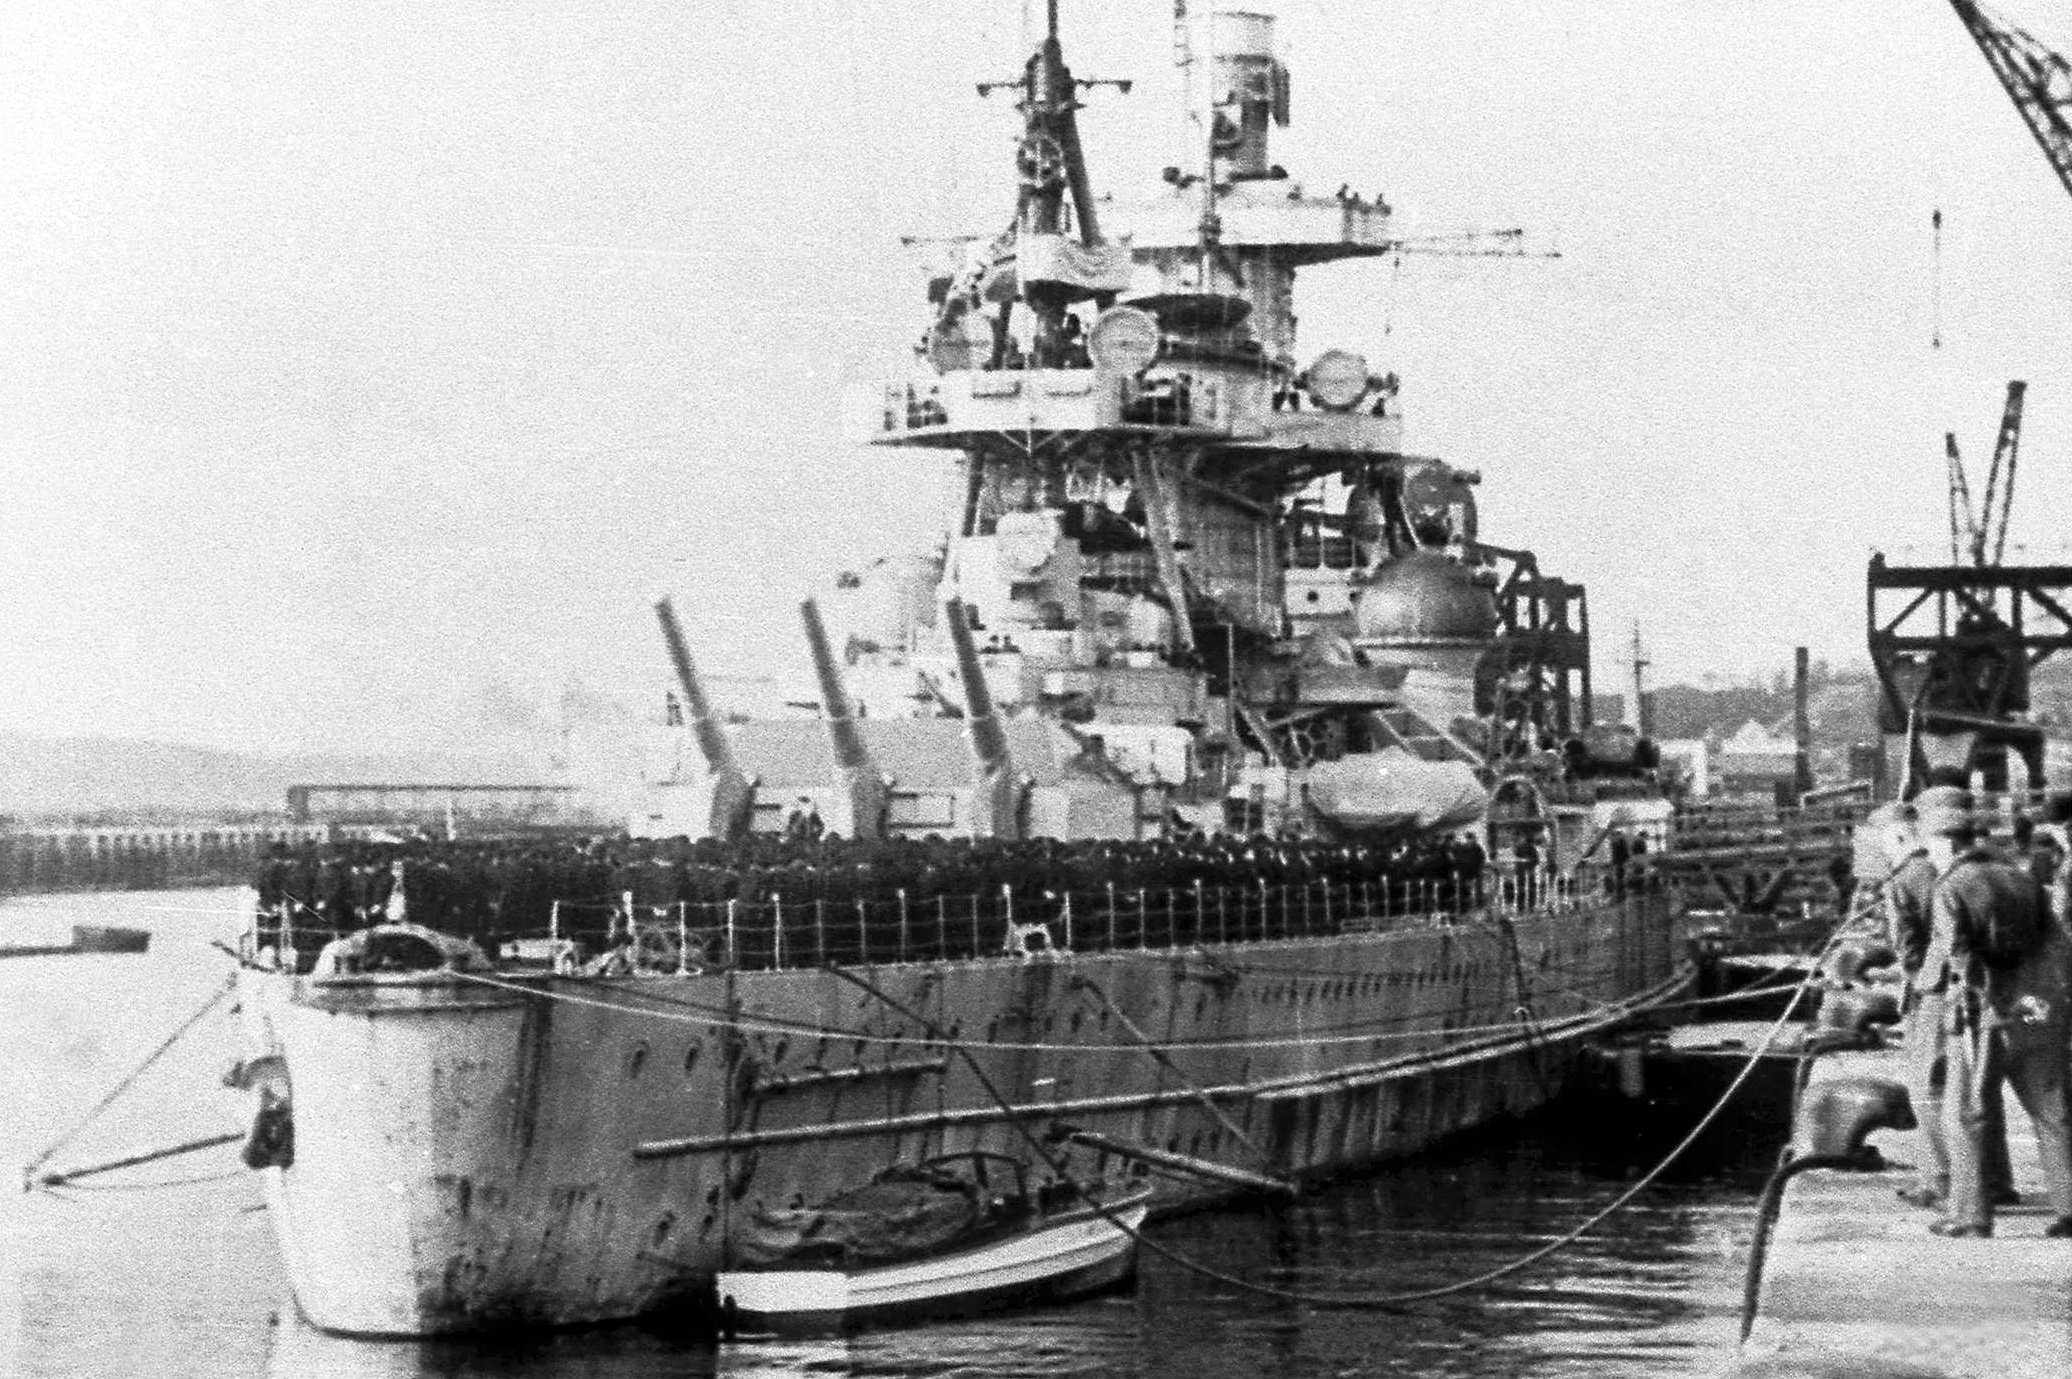 Scharnhorst